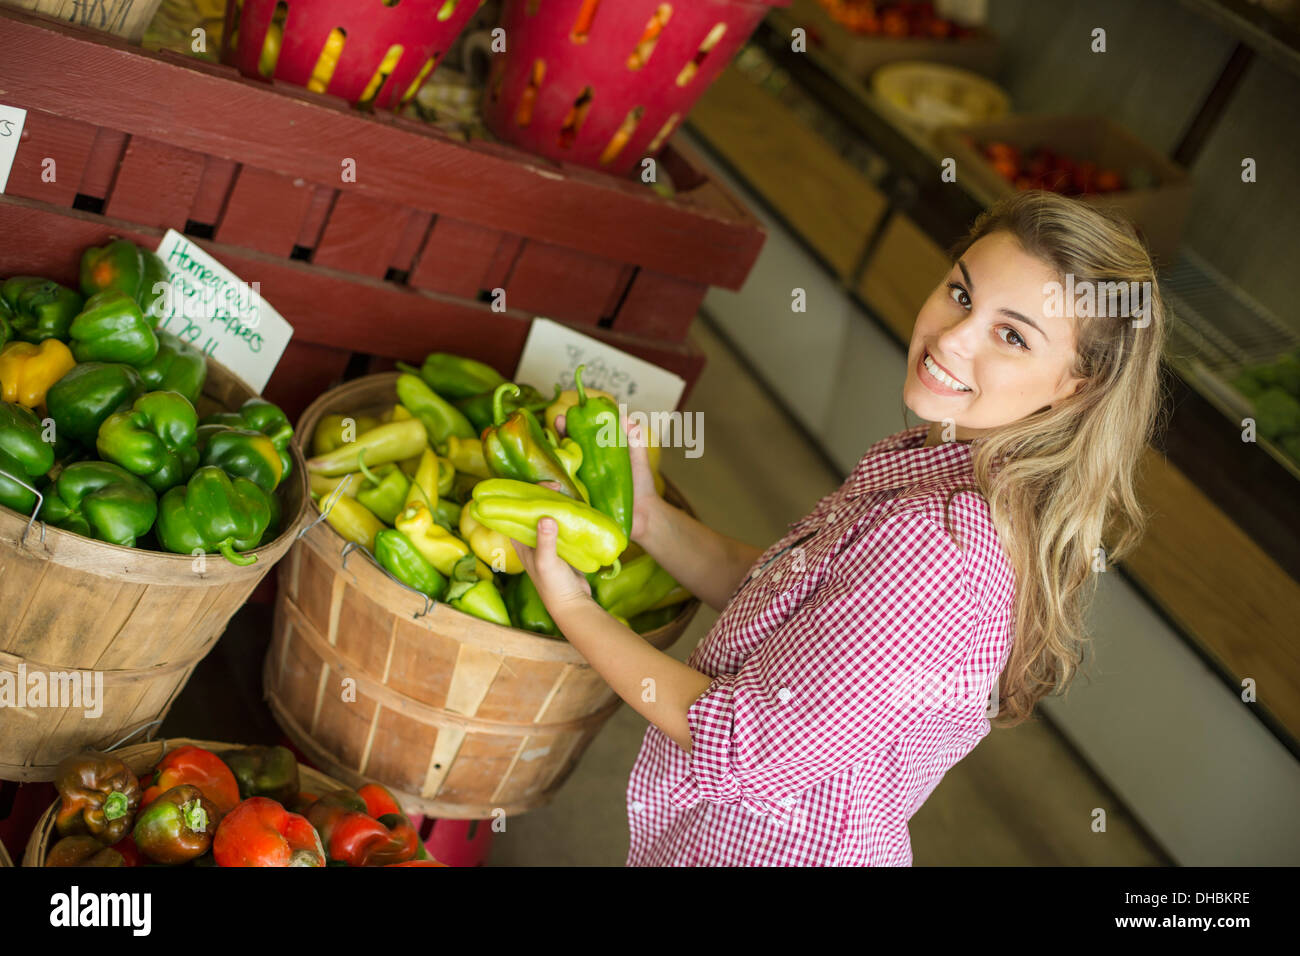 Travailler sur une ferme biologique. Une jeune femme aux cheveux blonds différents types de tri bell pepper pour la vente. Banque D'Images